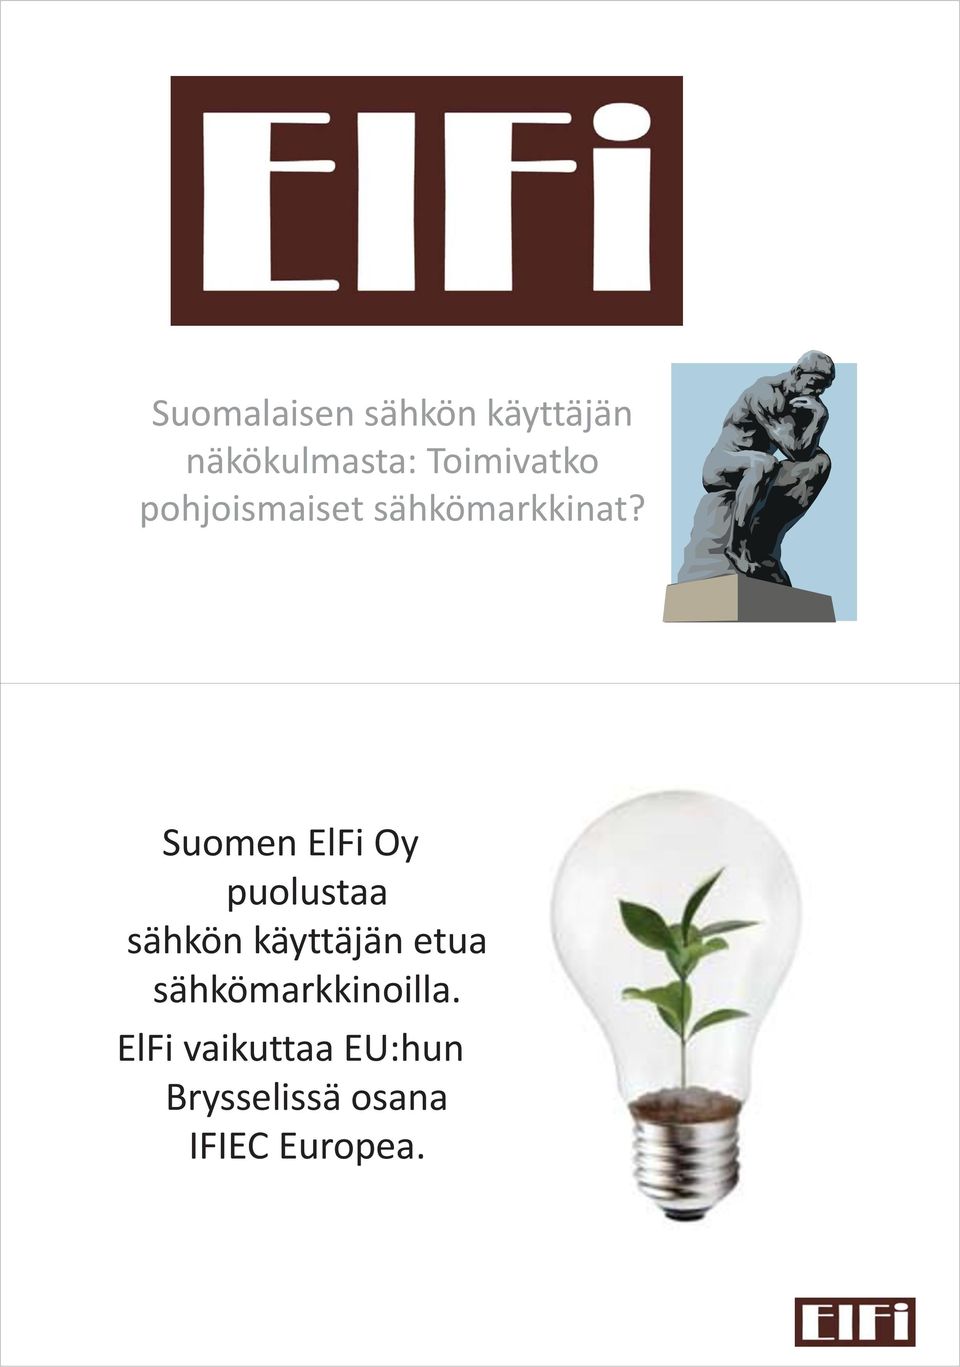 Suomen ElFi Oy puolustaa sähkön käyttäjän etua